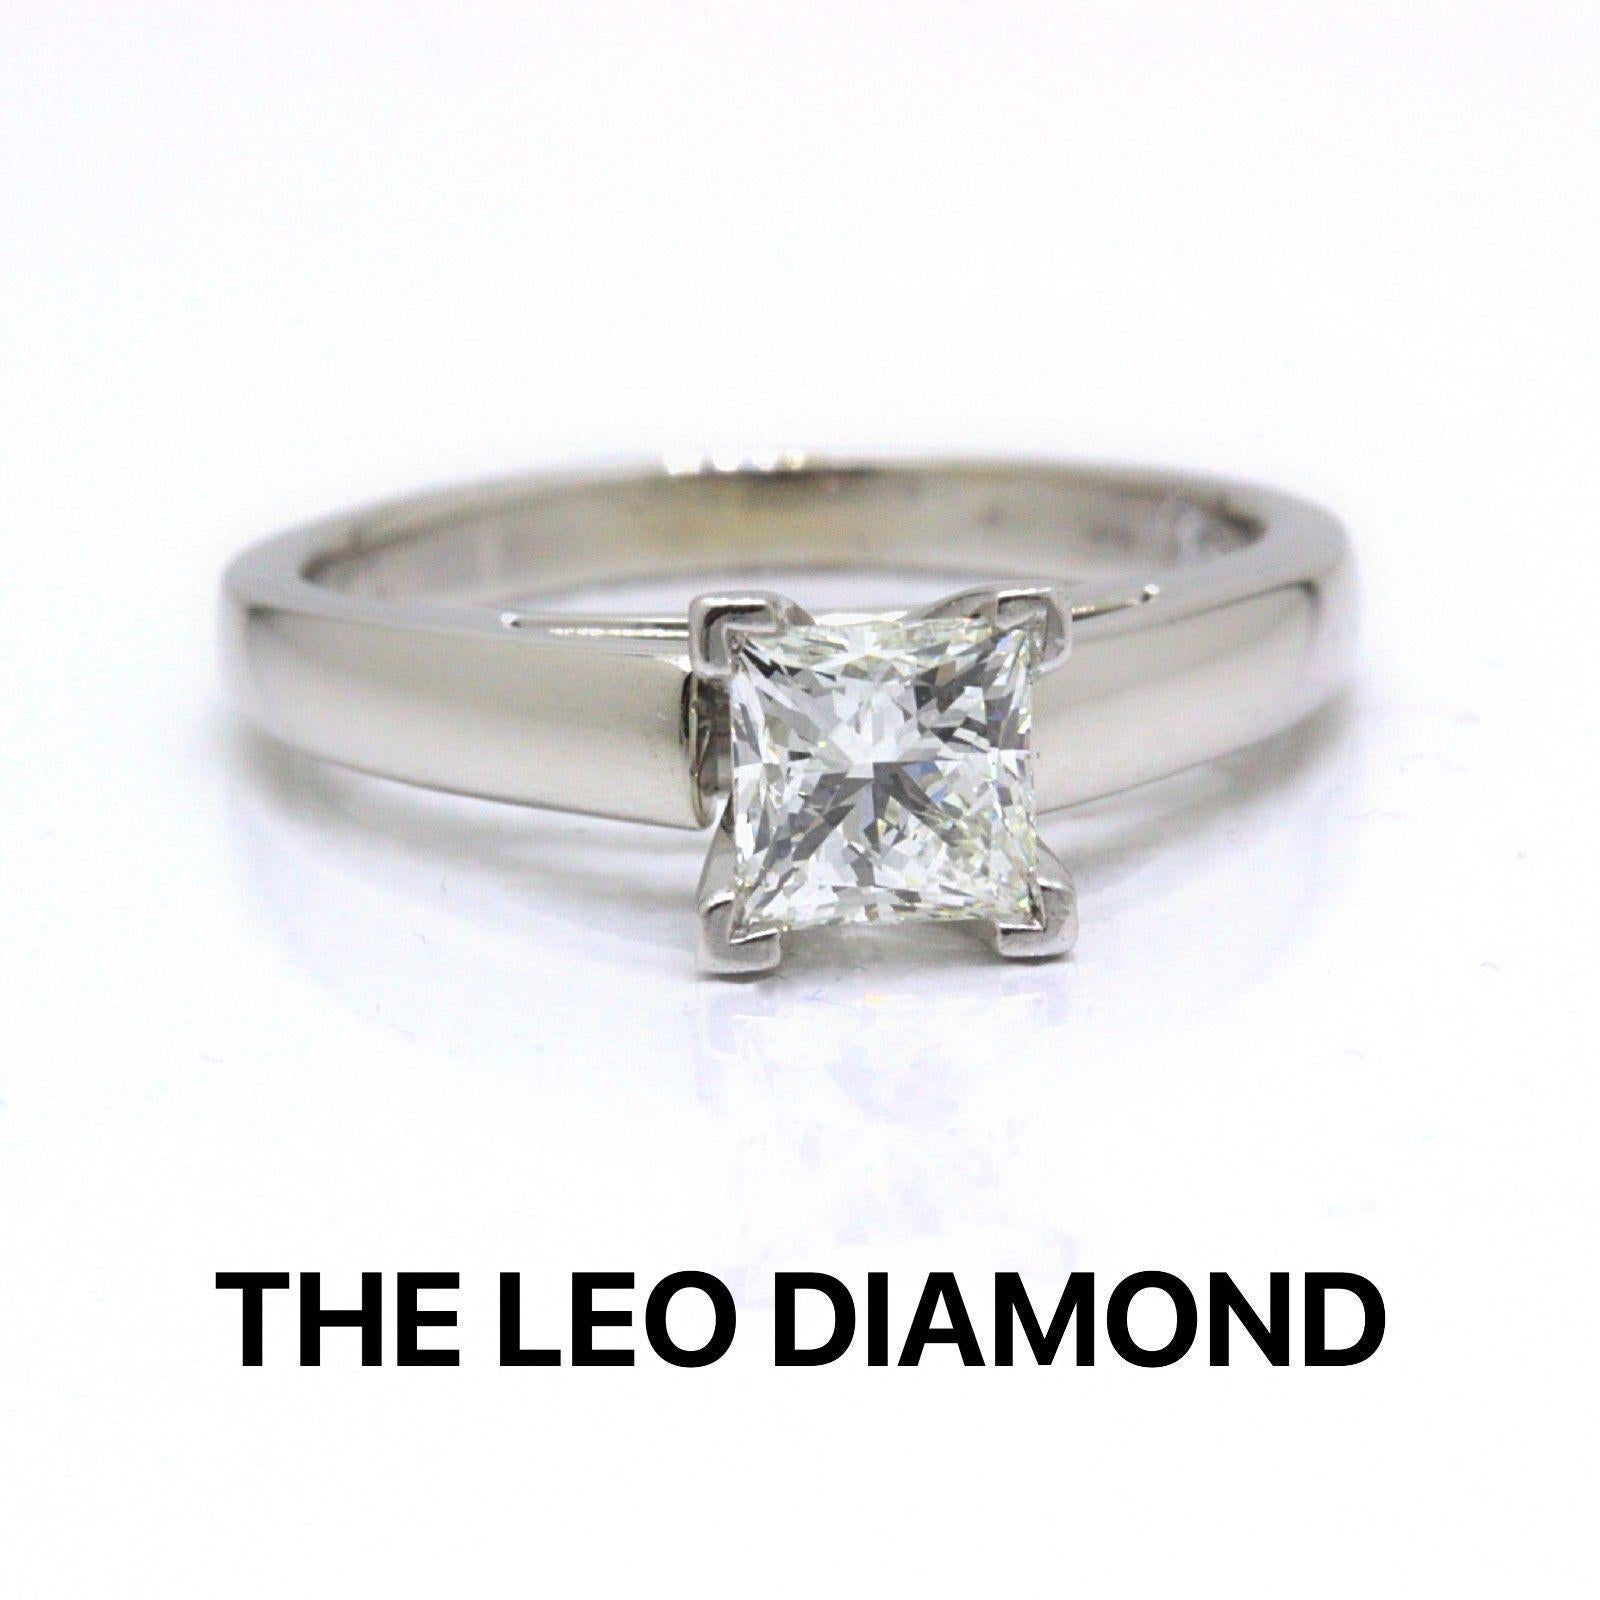 Le diamant Leo
Le style :  bague Artisanale Solitaire 4 Prongs
Numéro de série :  LEO 142600S
Métal :  prises en or blanc 14KT et en platine
Taille :   5.5 (de taille importante)
Poids total en carats :  0.75 CTS
Forme du diamant :  Princesse